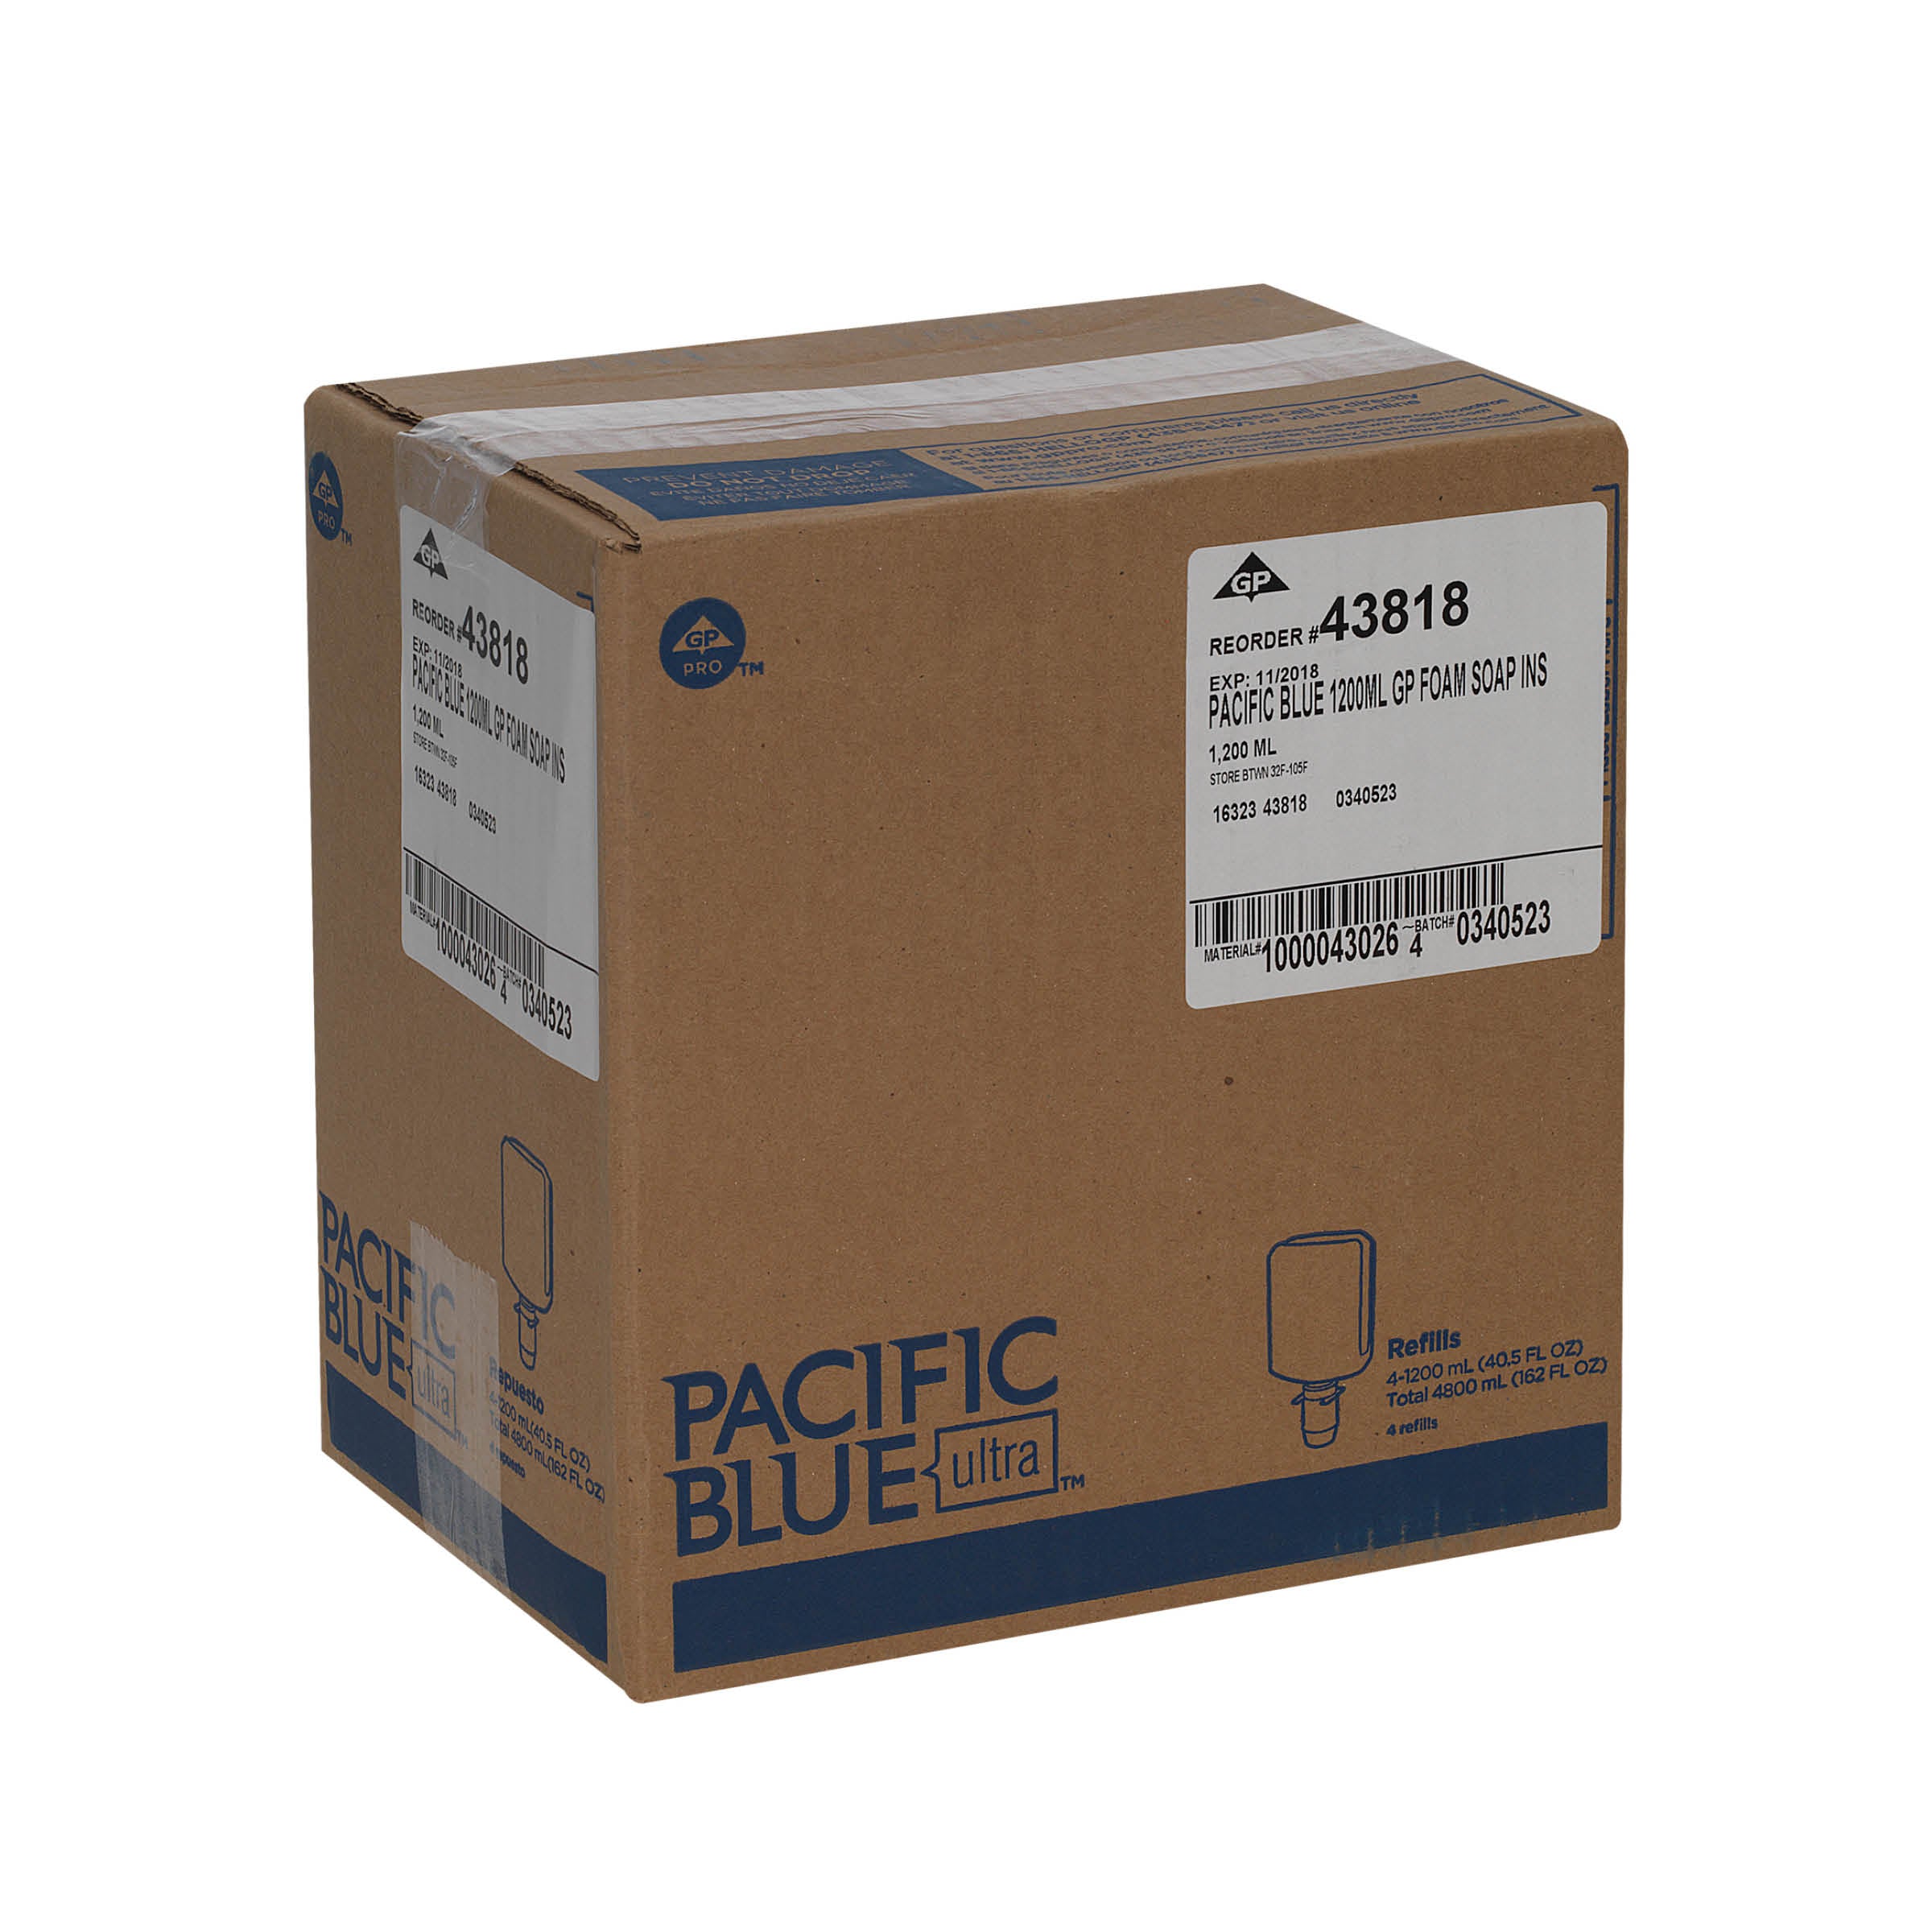 סבון ידיים מוקצף אנטי מיקרוביאלי PACIFIC BLUE ULTRA™ למתקנים ידניים מבית GP PRO, ללא צבע וניחוח, (4 בקבוקים של 1200 mL סהכ 4800 mL)